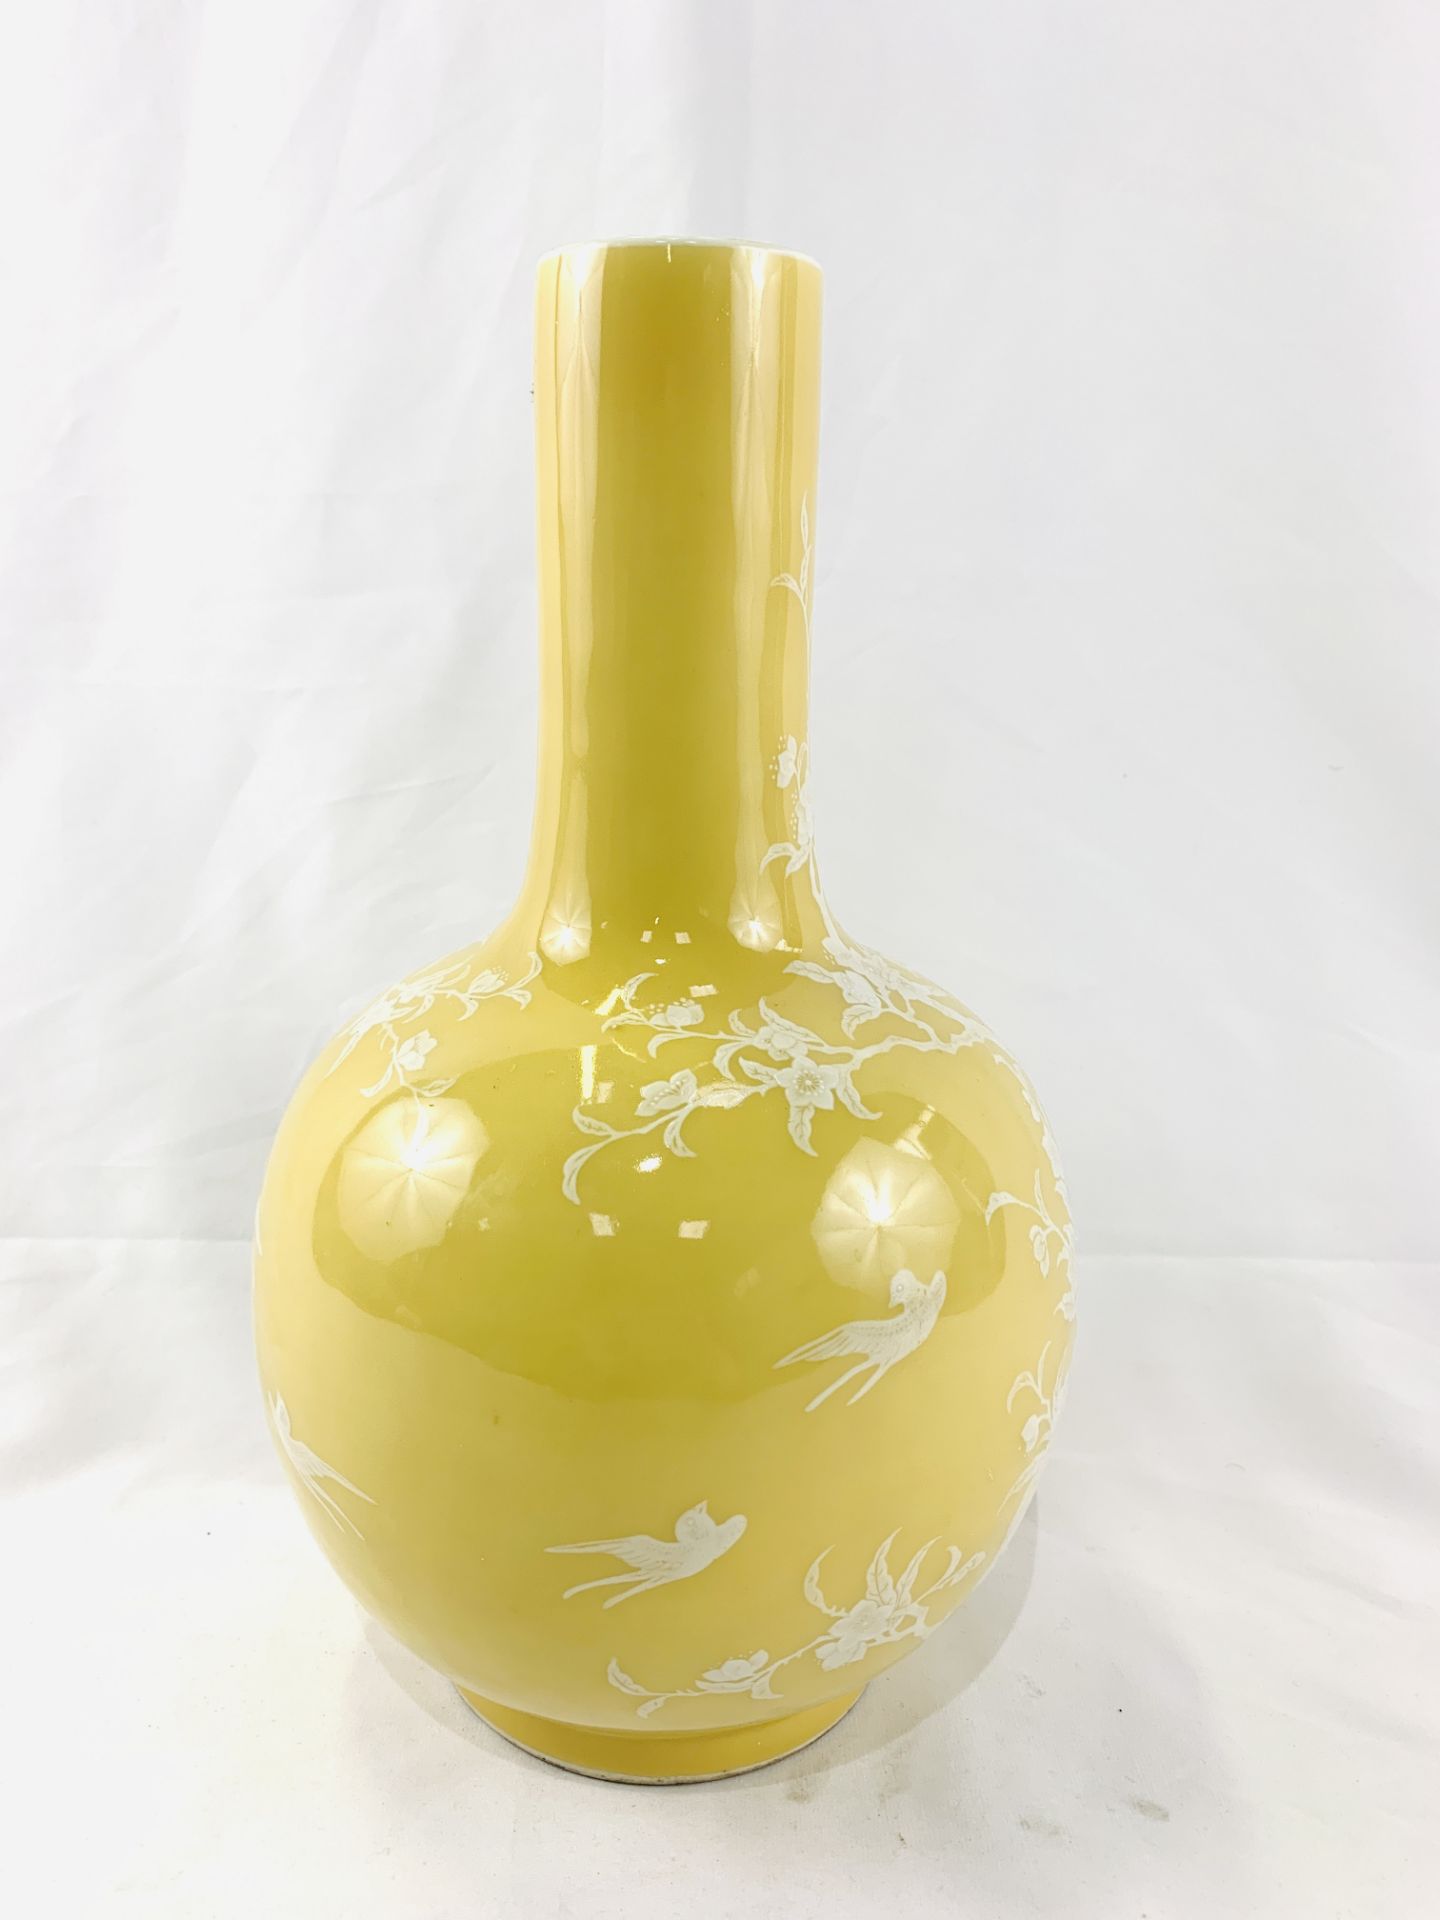 Yellow globe shaped vase - Image 3 of 6